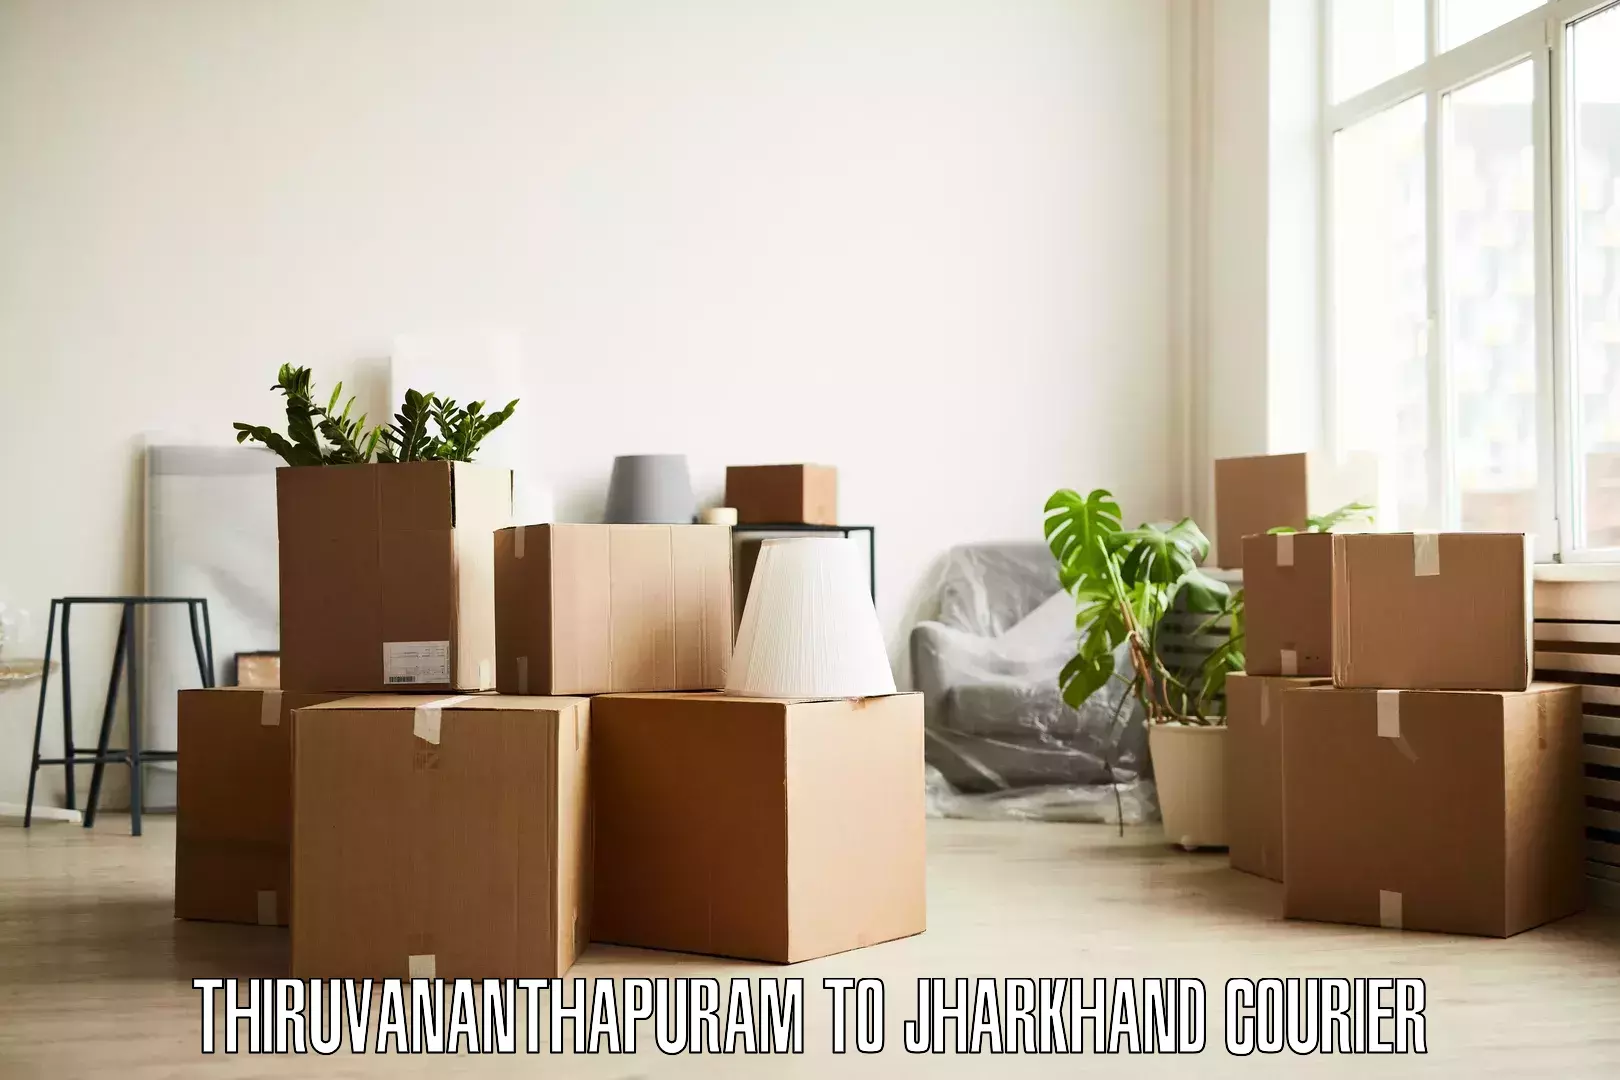 Furniture transport experts in Thiruvananthapuram to Jamshedpur